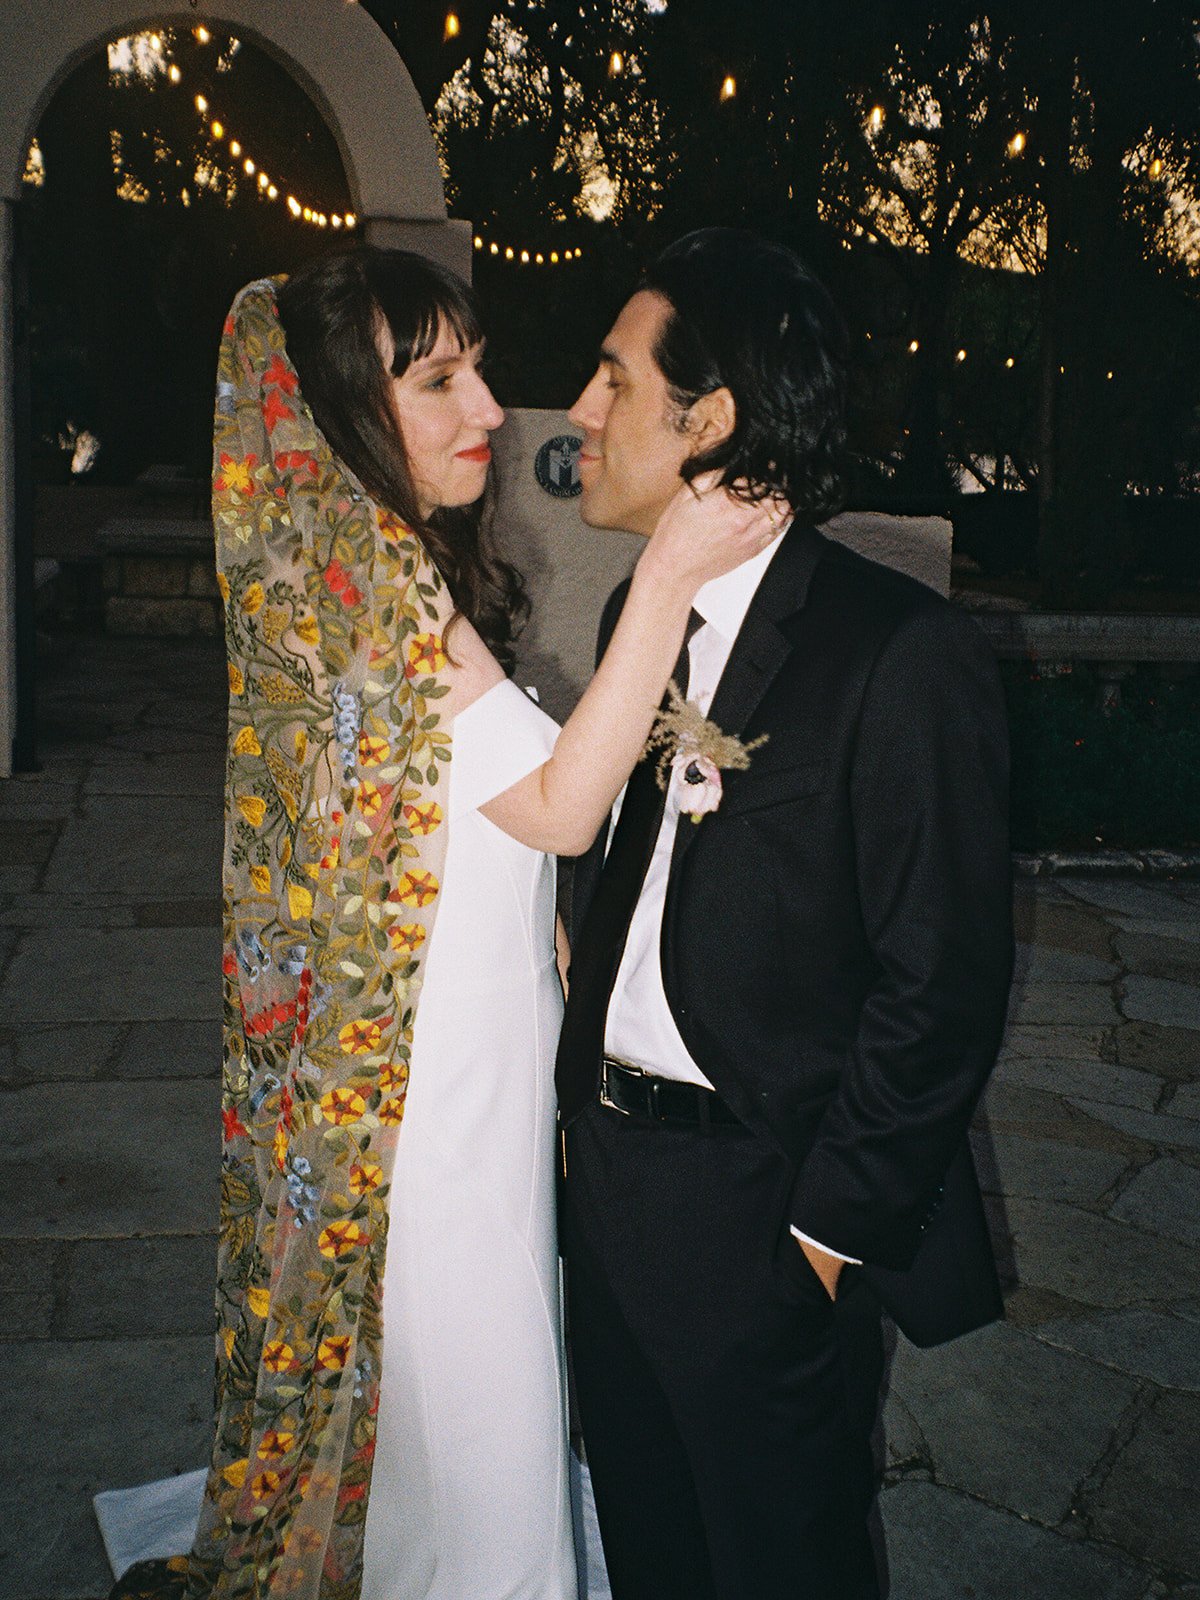 Best-Austin-Wedding-Photographers-Elopement-Film-35mm-Asheville-Santa-Barbara-Laguna-Gloria-90.jpg